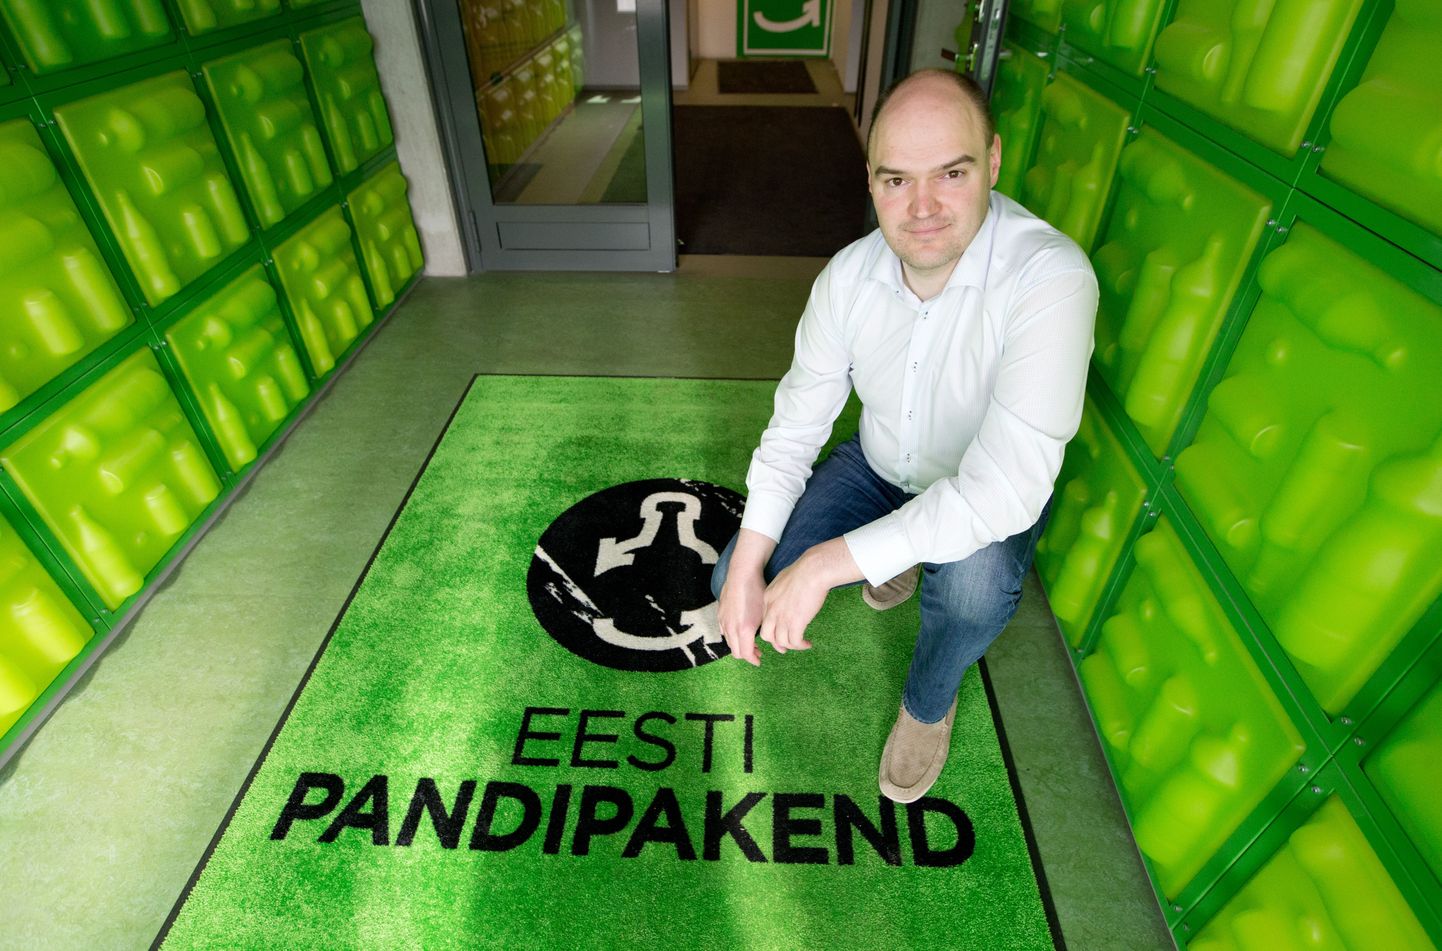 Pildil on Eesti Pandipakend juht Rauno Raal.